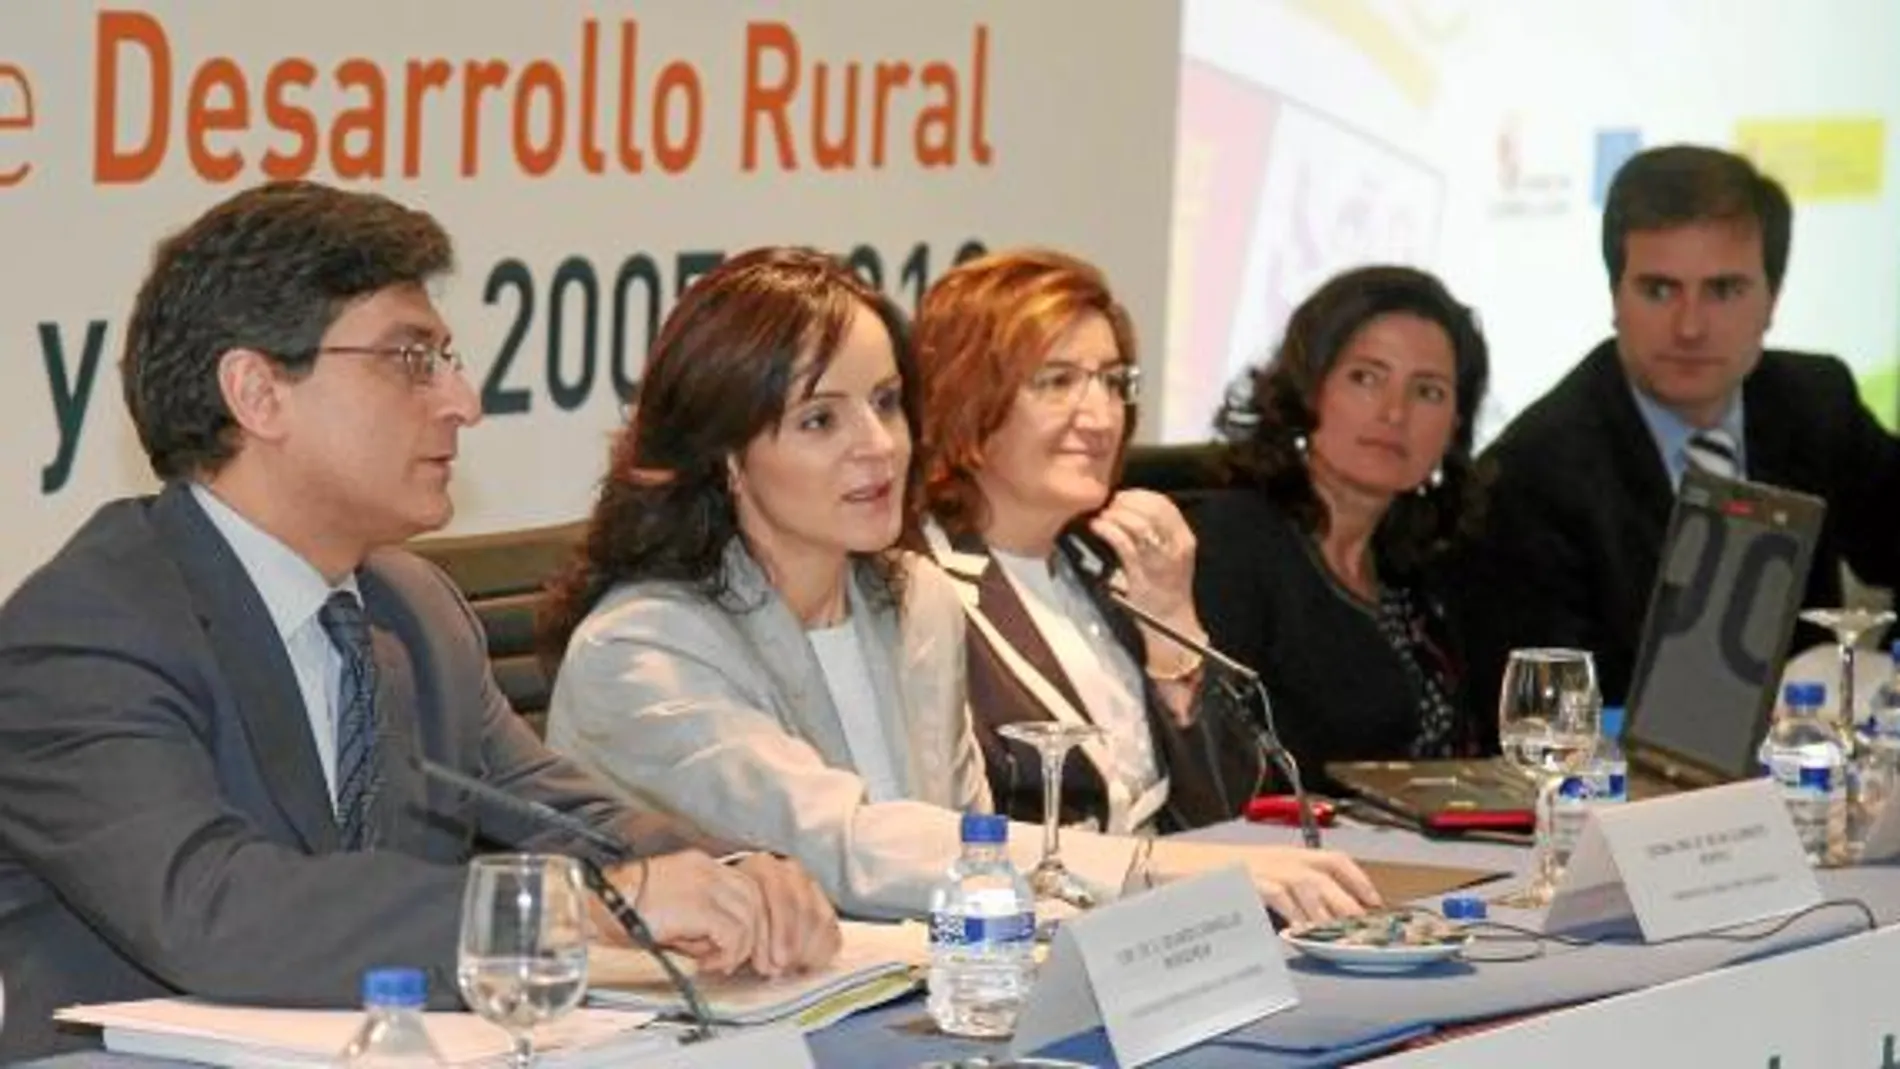 valladolid- Los agricultores y ganaderos, así como el medio rural de Castilla y León es una prioridad para el Gobierno que preside Juan Vicente Herrera. Así lo demuestra los Presupuestos Generales de la Comunidad para 2011, ya que, a pesar de la crisis, v